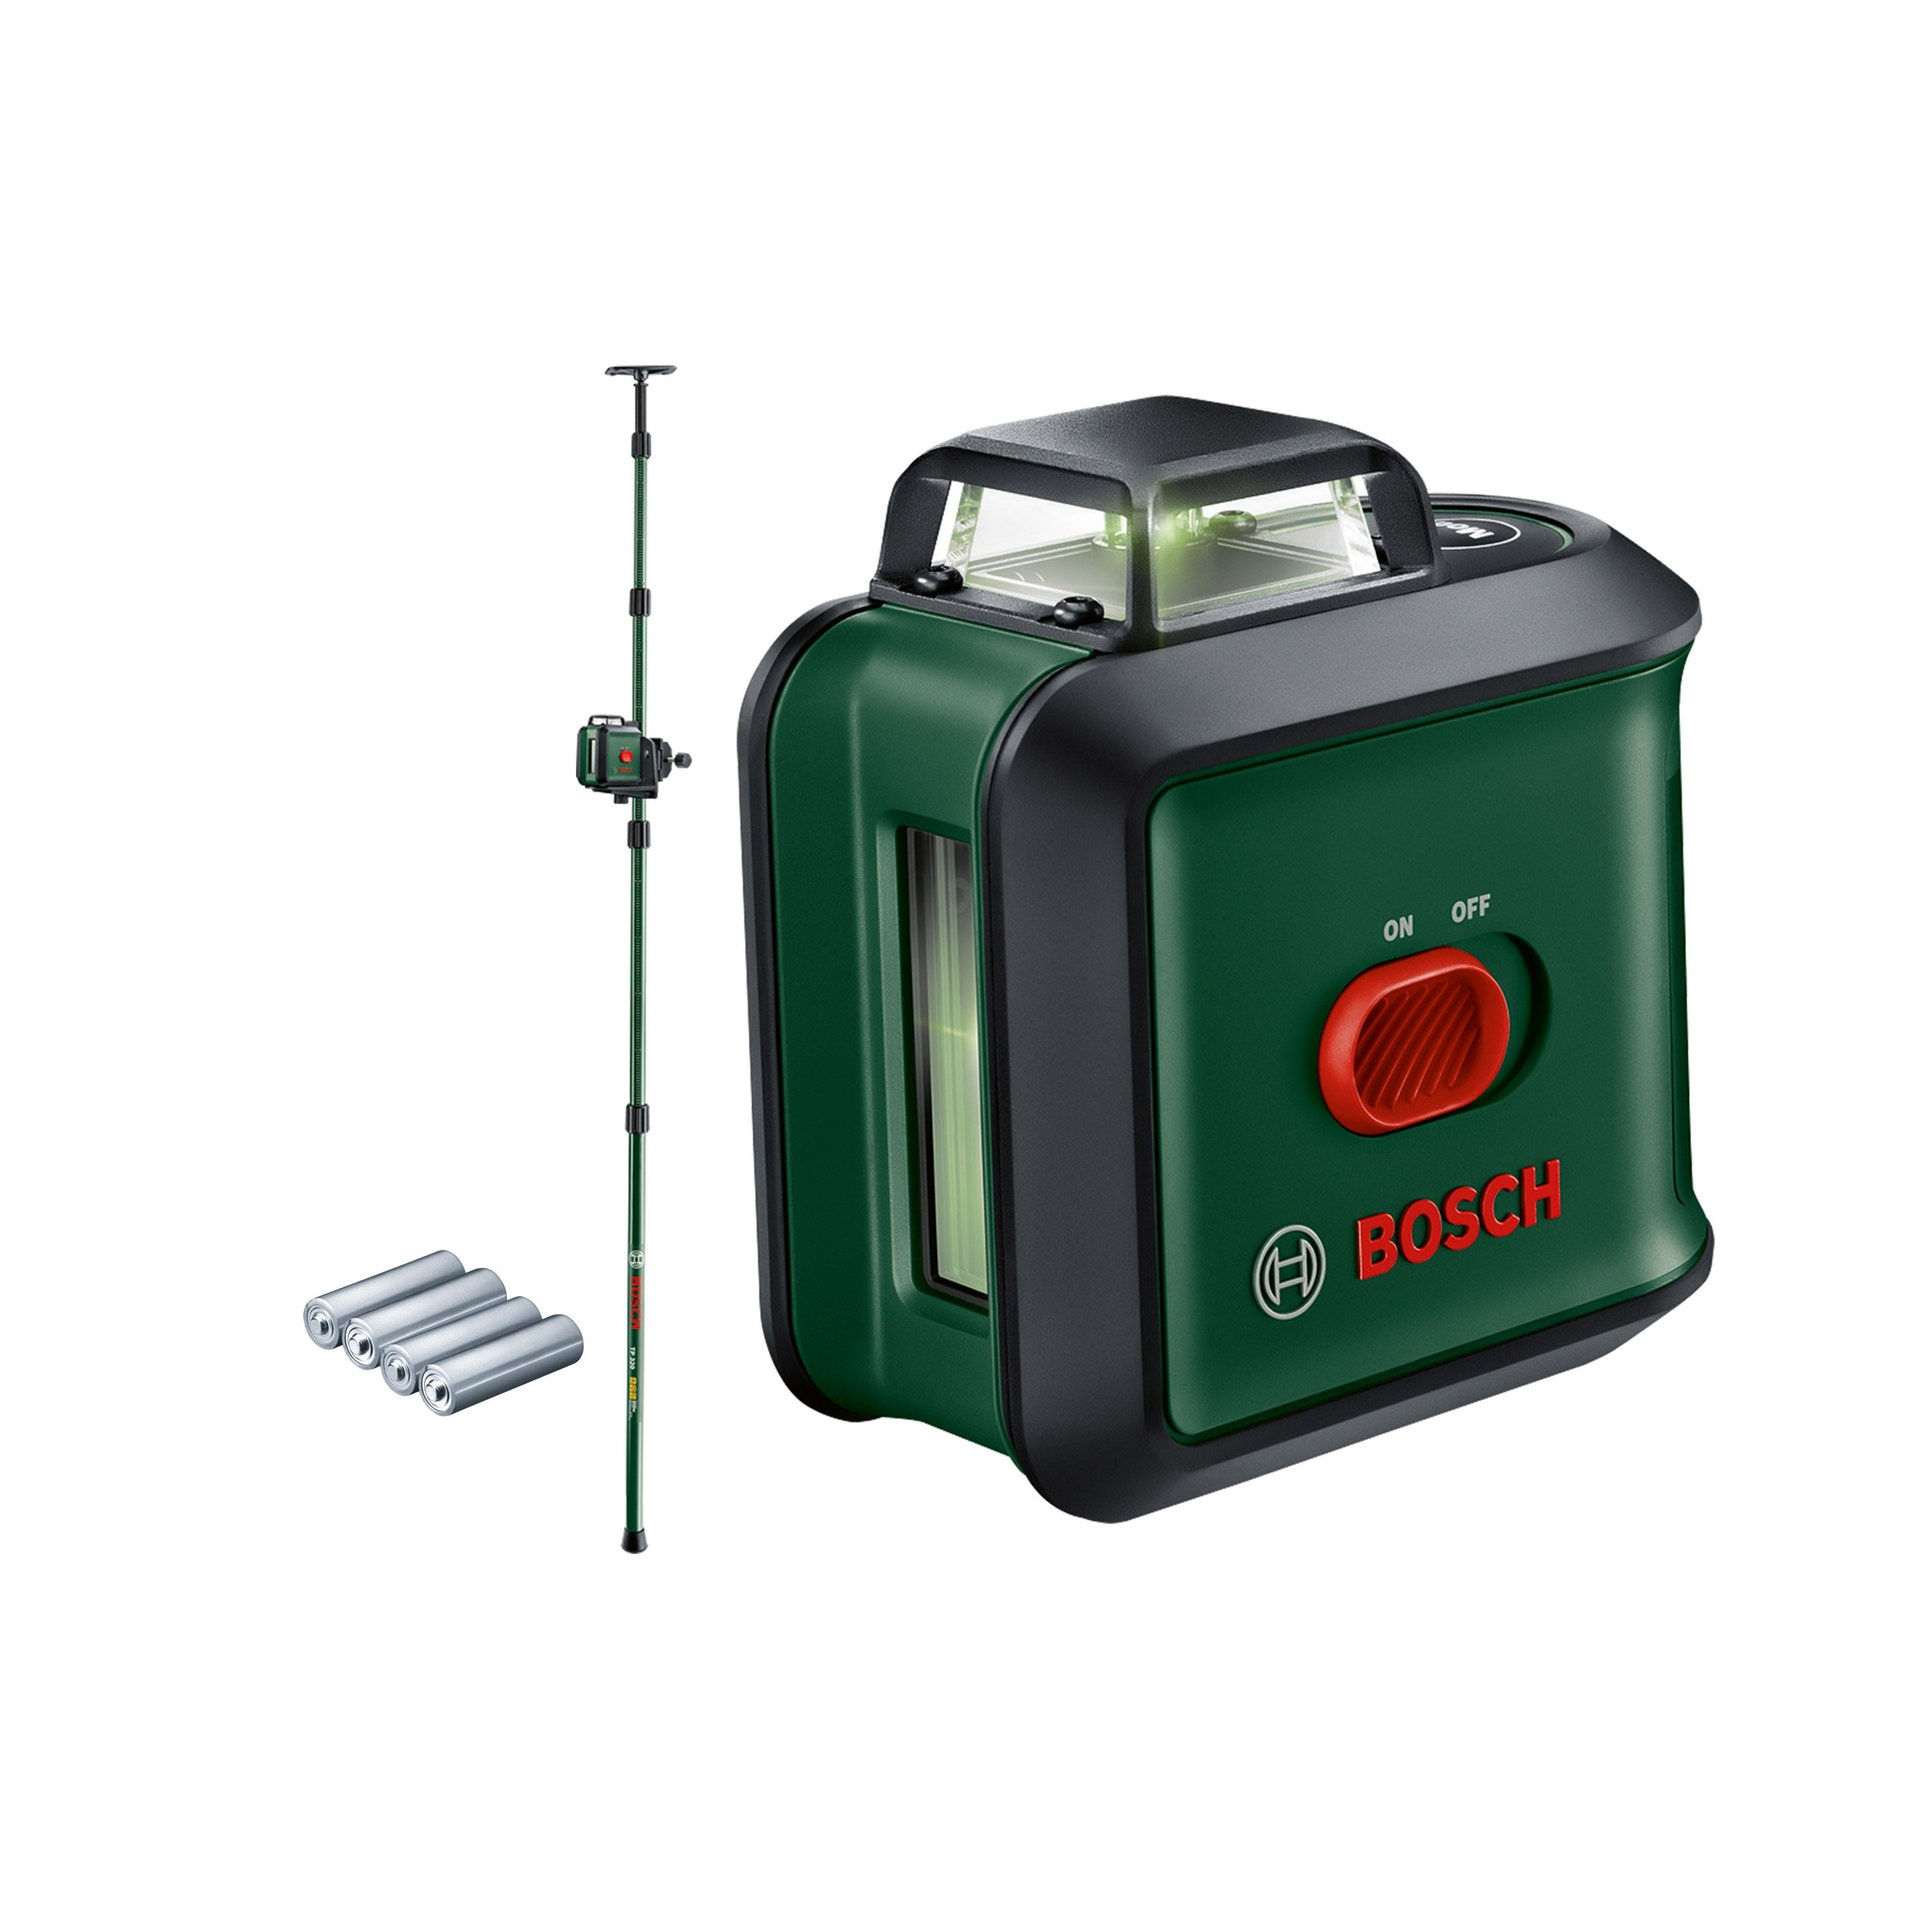 Bosch niveau laser UniversalLevel 360 avec trépied et pince laser vert, portée : jusqu’à 24 m, précision : ± 0,4 mm, auto-nivellement : jusqu’à ± 4°, 4x piles AA, dans une boîte en car 